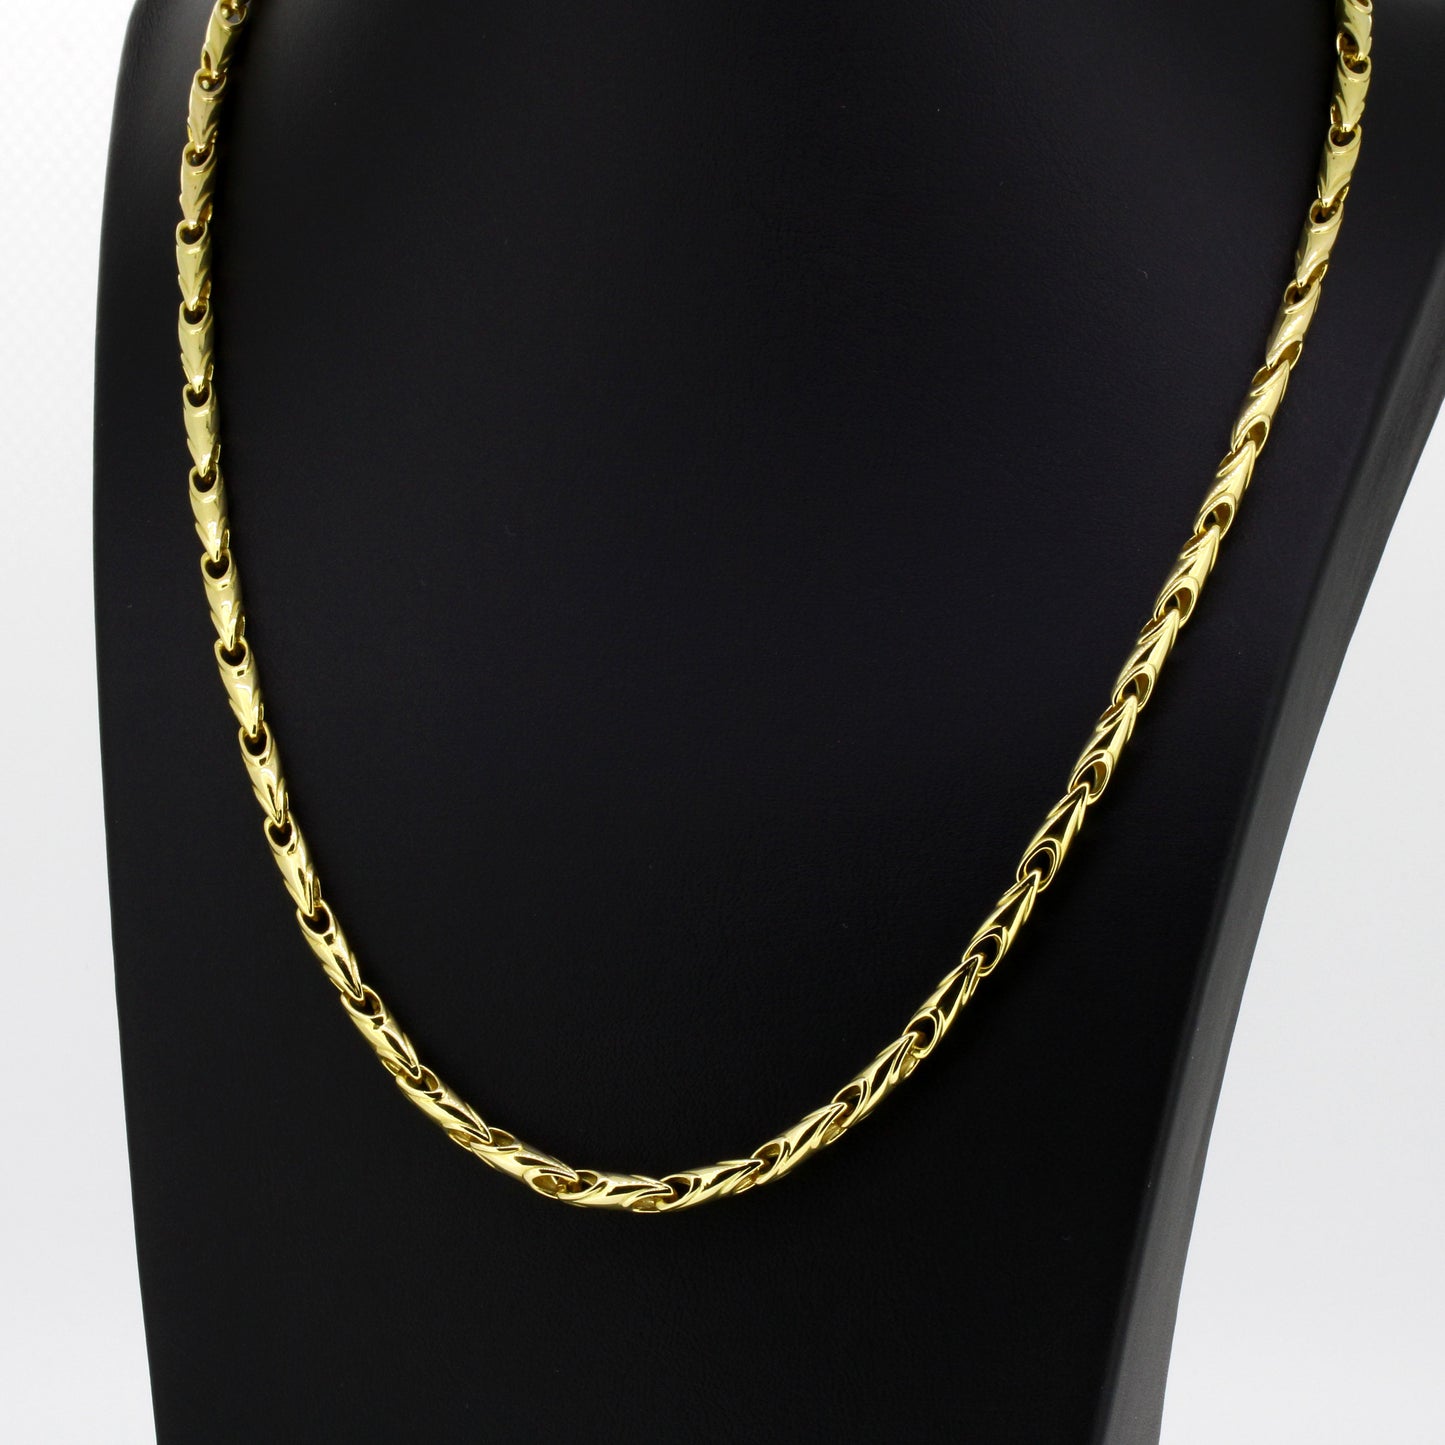 Halskette 750 Gold Kette 18 Kt 51 cm lang Wert 5870,-